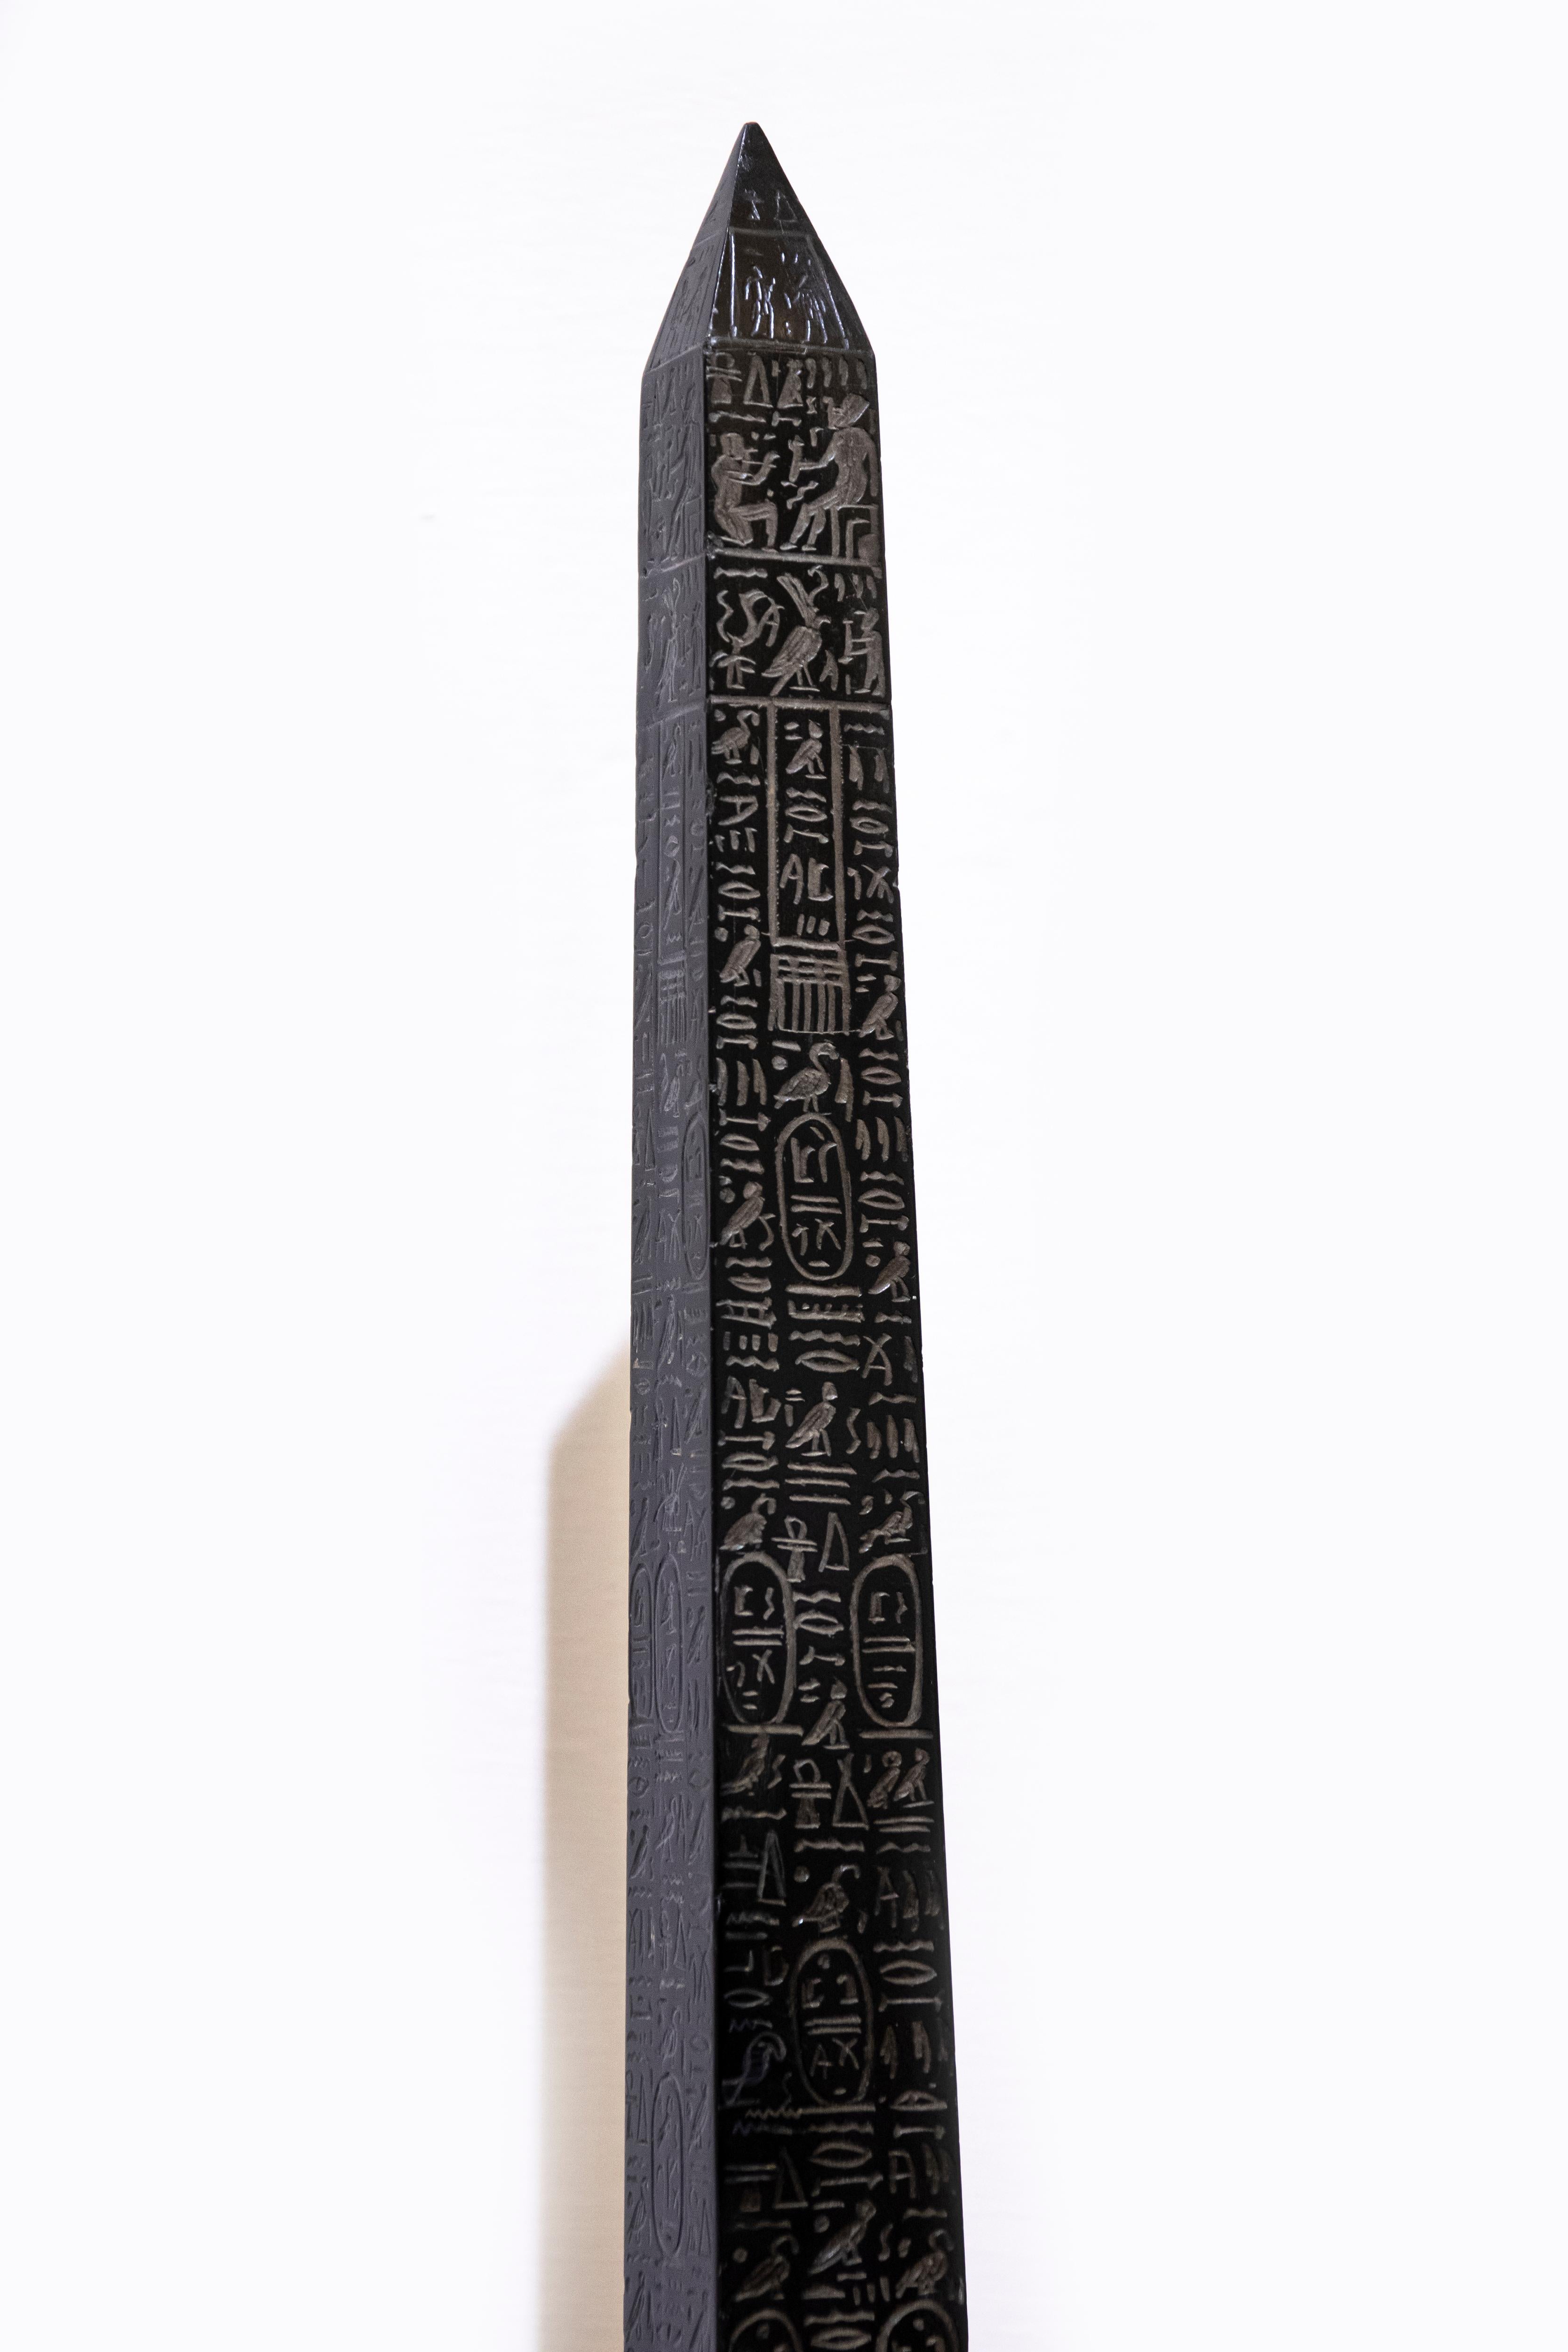 Egyptian Belgian Black Marble Obelisk, Roma, 19th Century For Sale